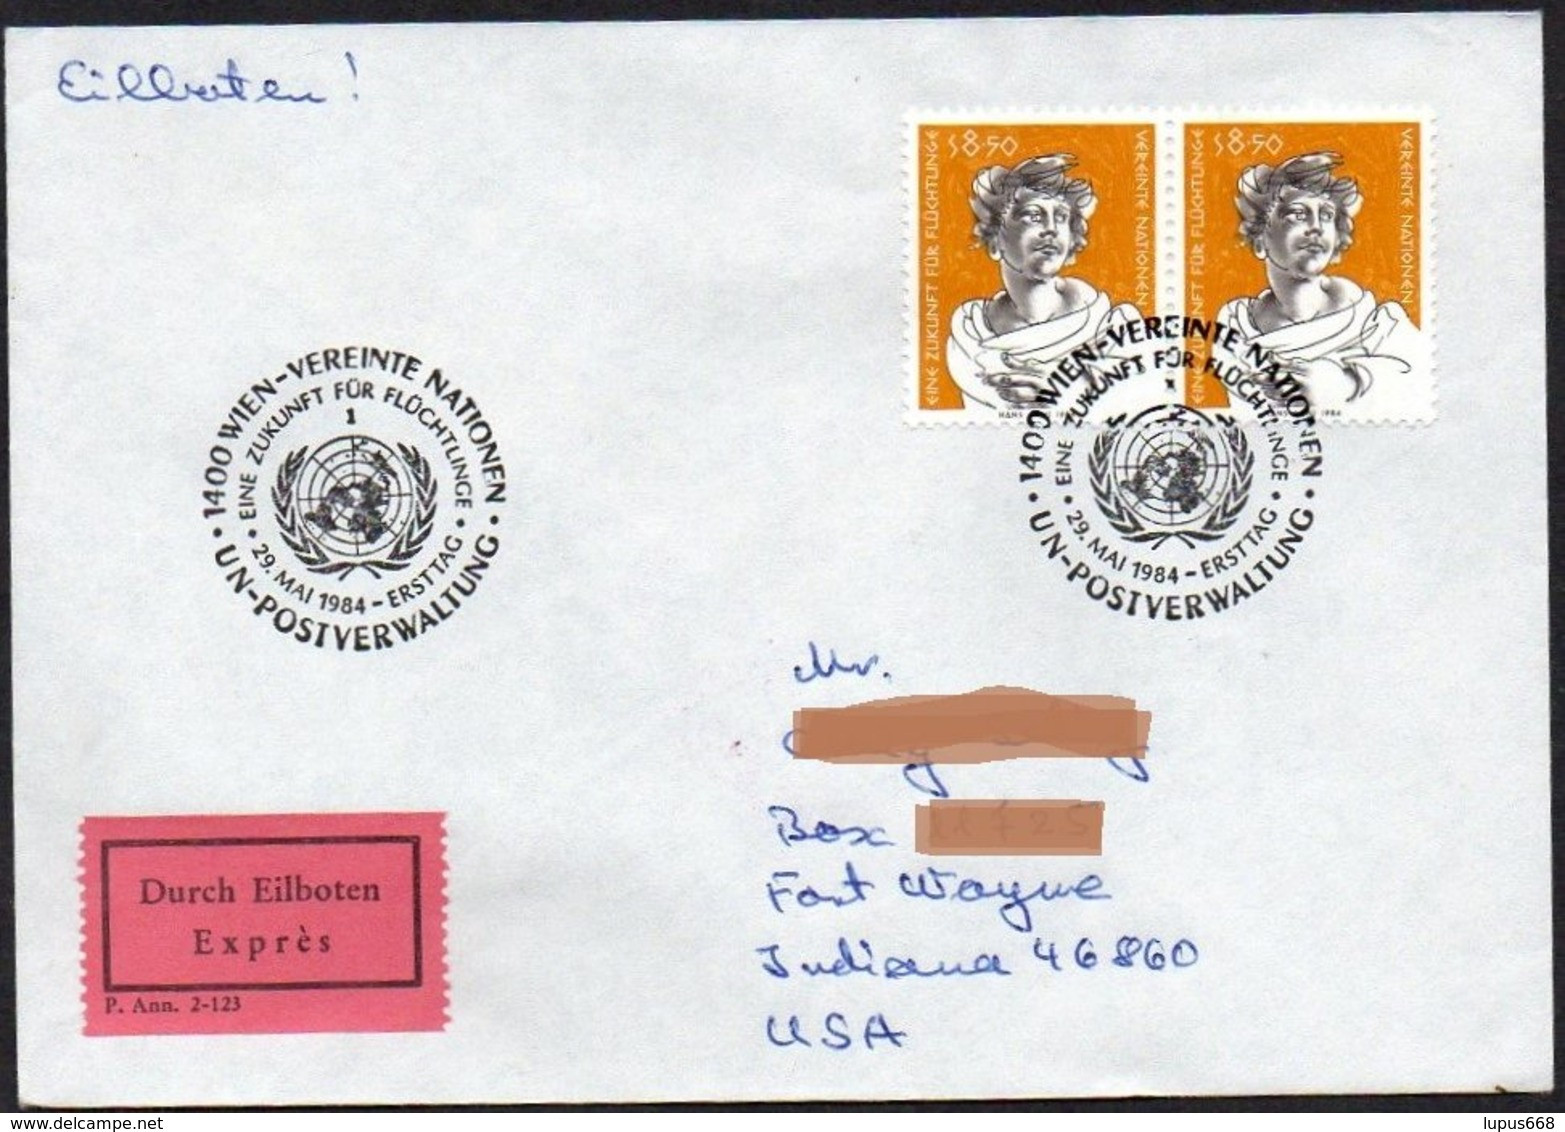 UNO - Wien  1984  MiNr. 44 (2)  Auf Express - Brief In Die U.S.A  ,  FDC; Eine Zukunft Für Flüchtlinge - Storia Postale